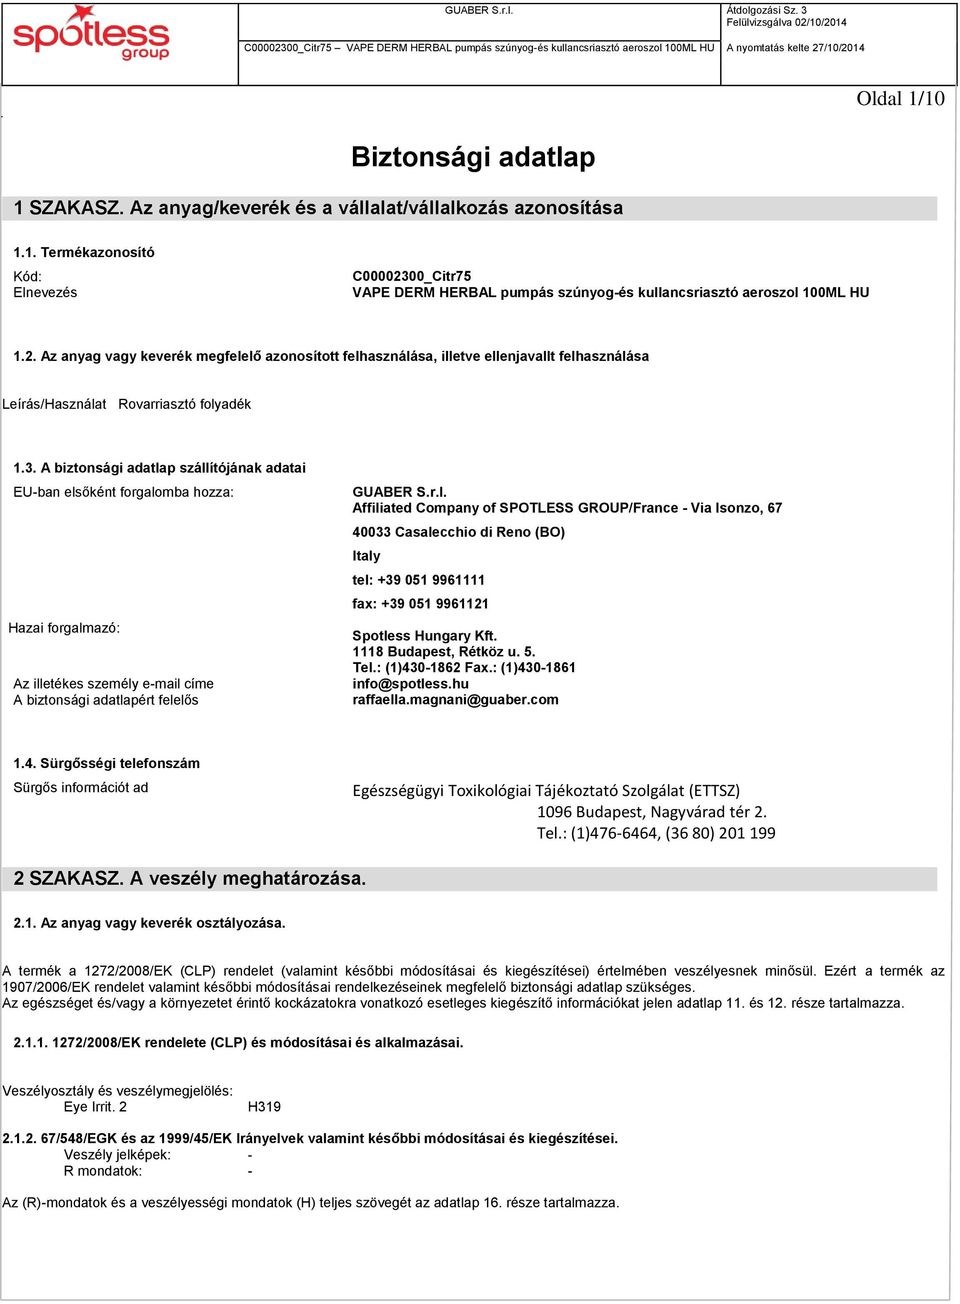 A biztonsági adatlap szállítójának adatai EU-ban elsőként forgalomba hozza: Hazai forgalmazó: Az illetékes személy e-mail címe A biztonsági adatlapért felelős GUABER S.r.l. Affiliated Company of SPOTLESS GROUP/France - Via Isonzo, 67 40033 Casalecchio di Reno (BO) Italy tel: +39 051 9961111 fax: +39 051 9961121 Spotless Hungary Kft.